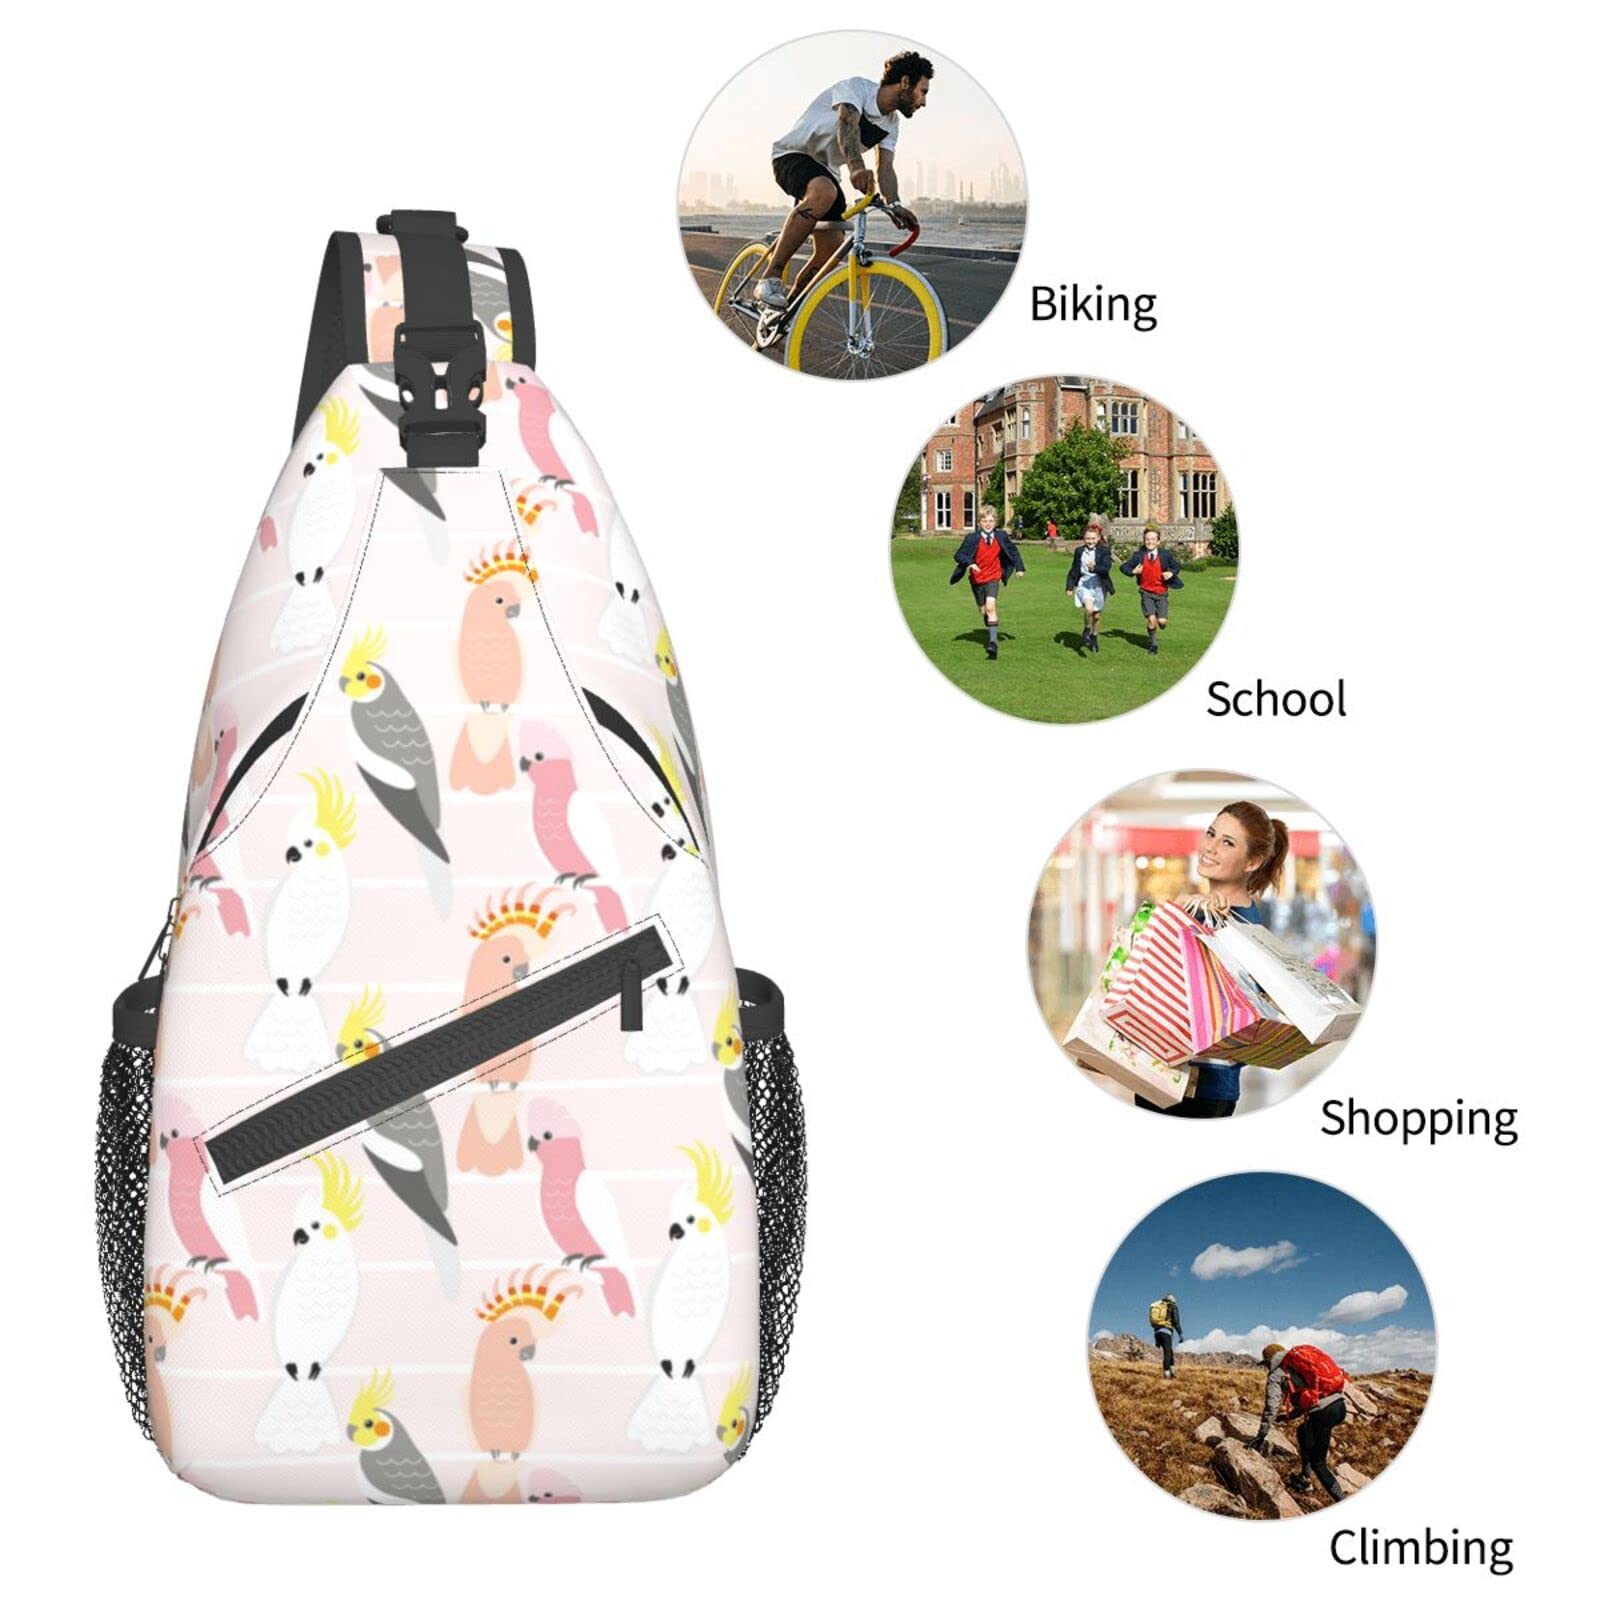 Parrot Sling Bag, Chest Bag Daypack, Crossbody Sling Backpack for Travel Sports Running Hiking